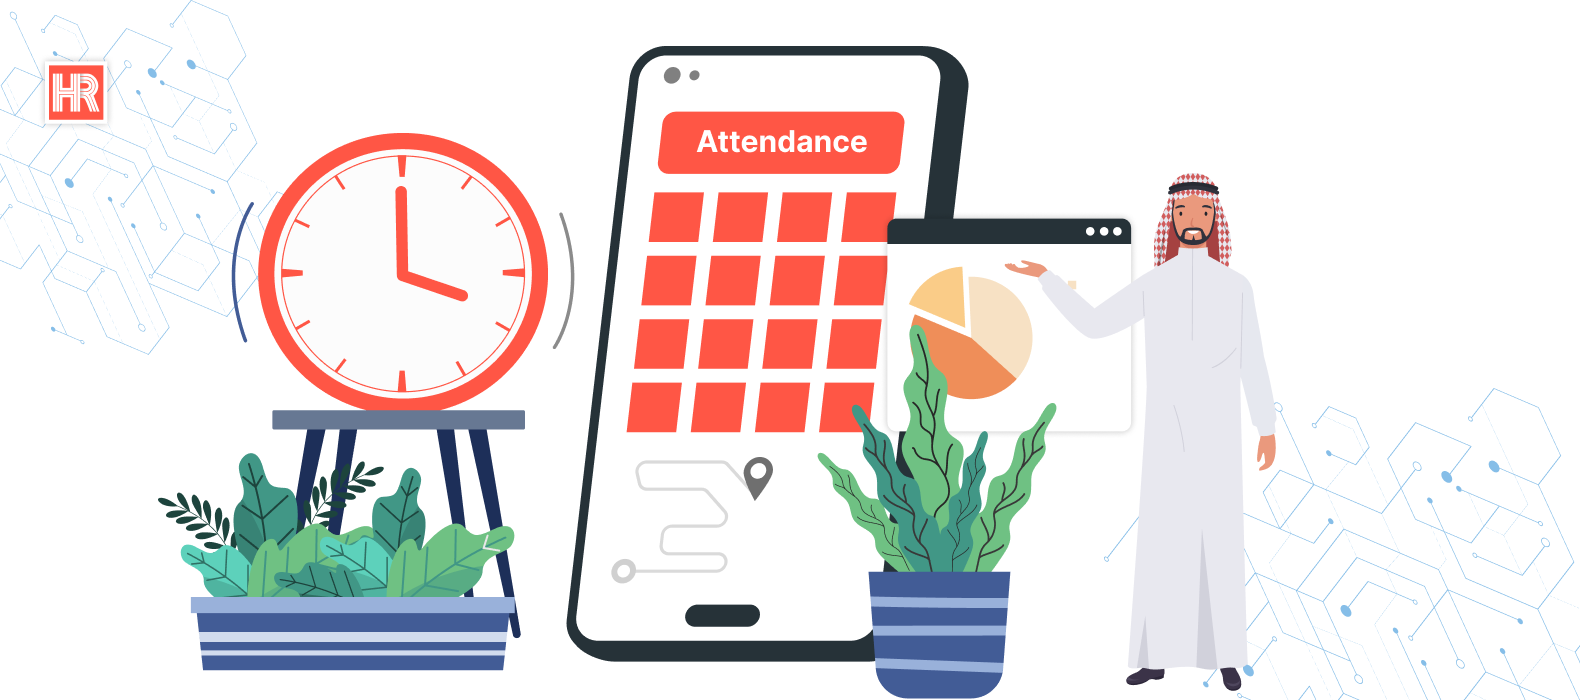 Attendance Tracker software